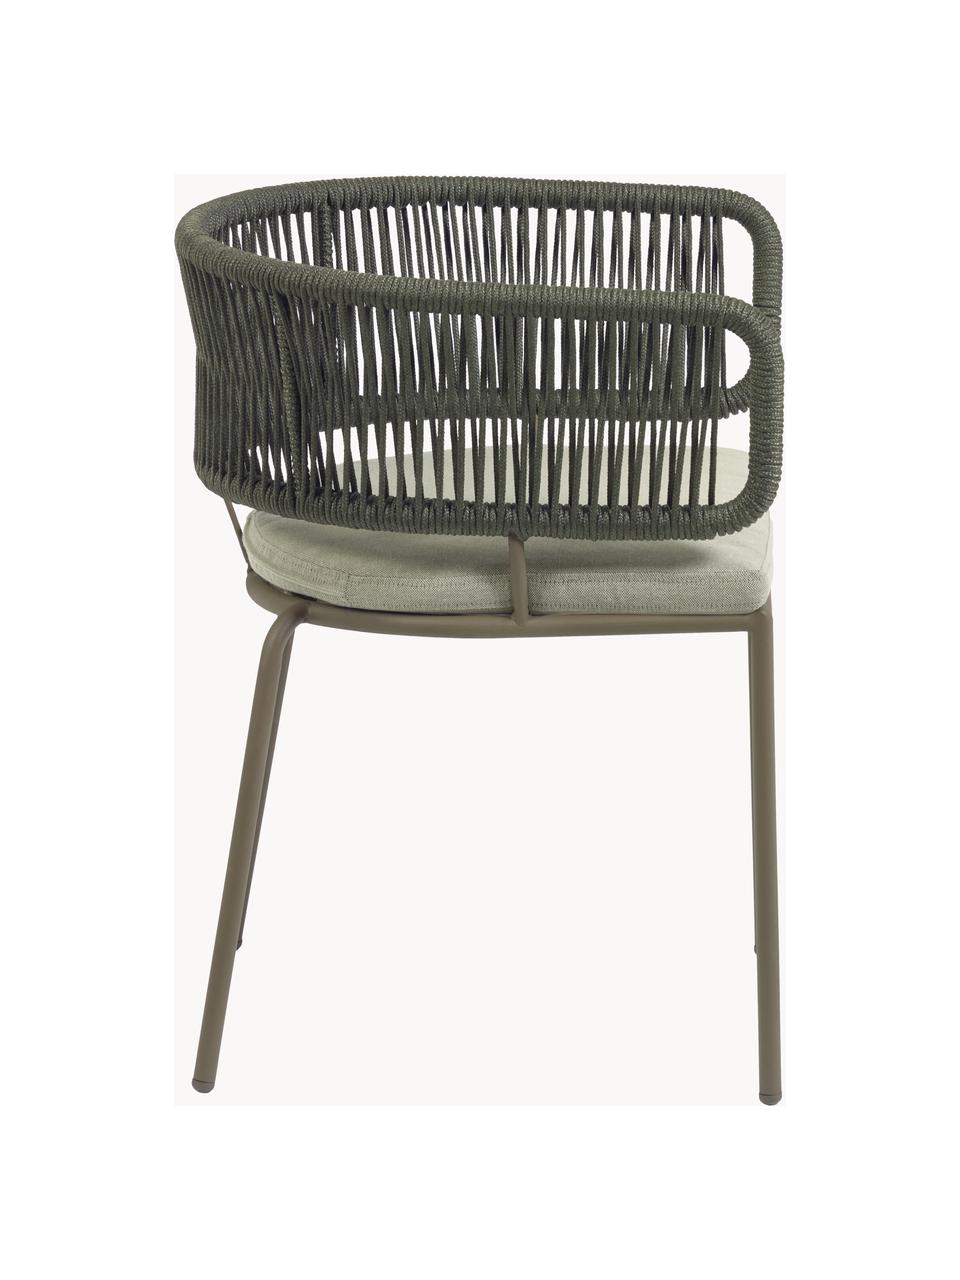 Zahradní židle s výpletem Nadin, Světle béžová, olivově zelená, Š 58 cm, H 48 cm